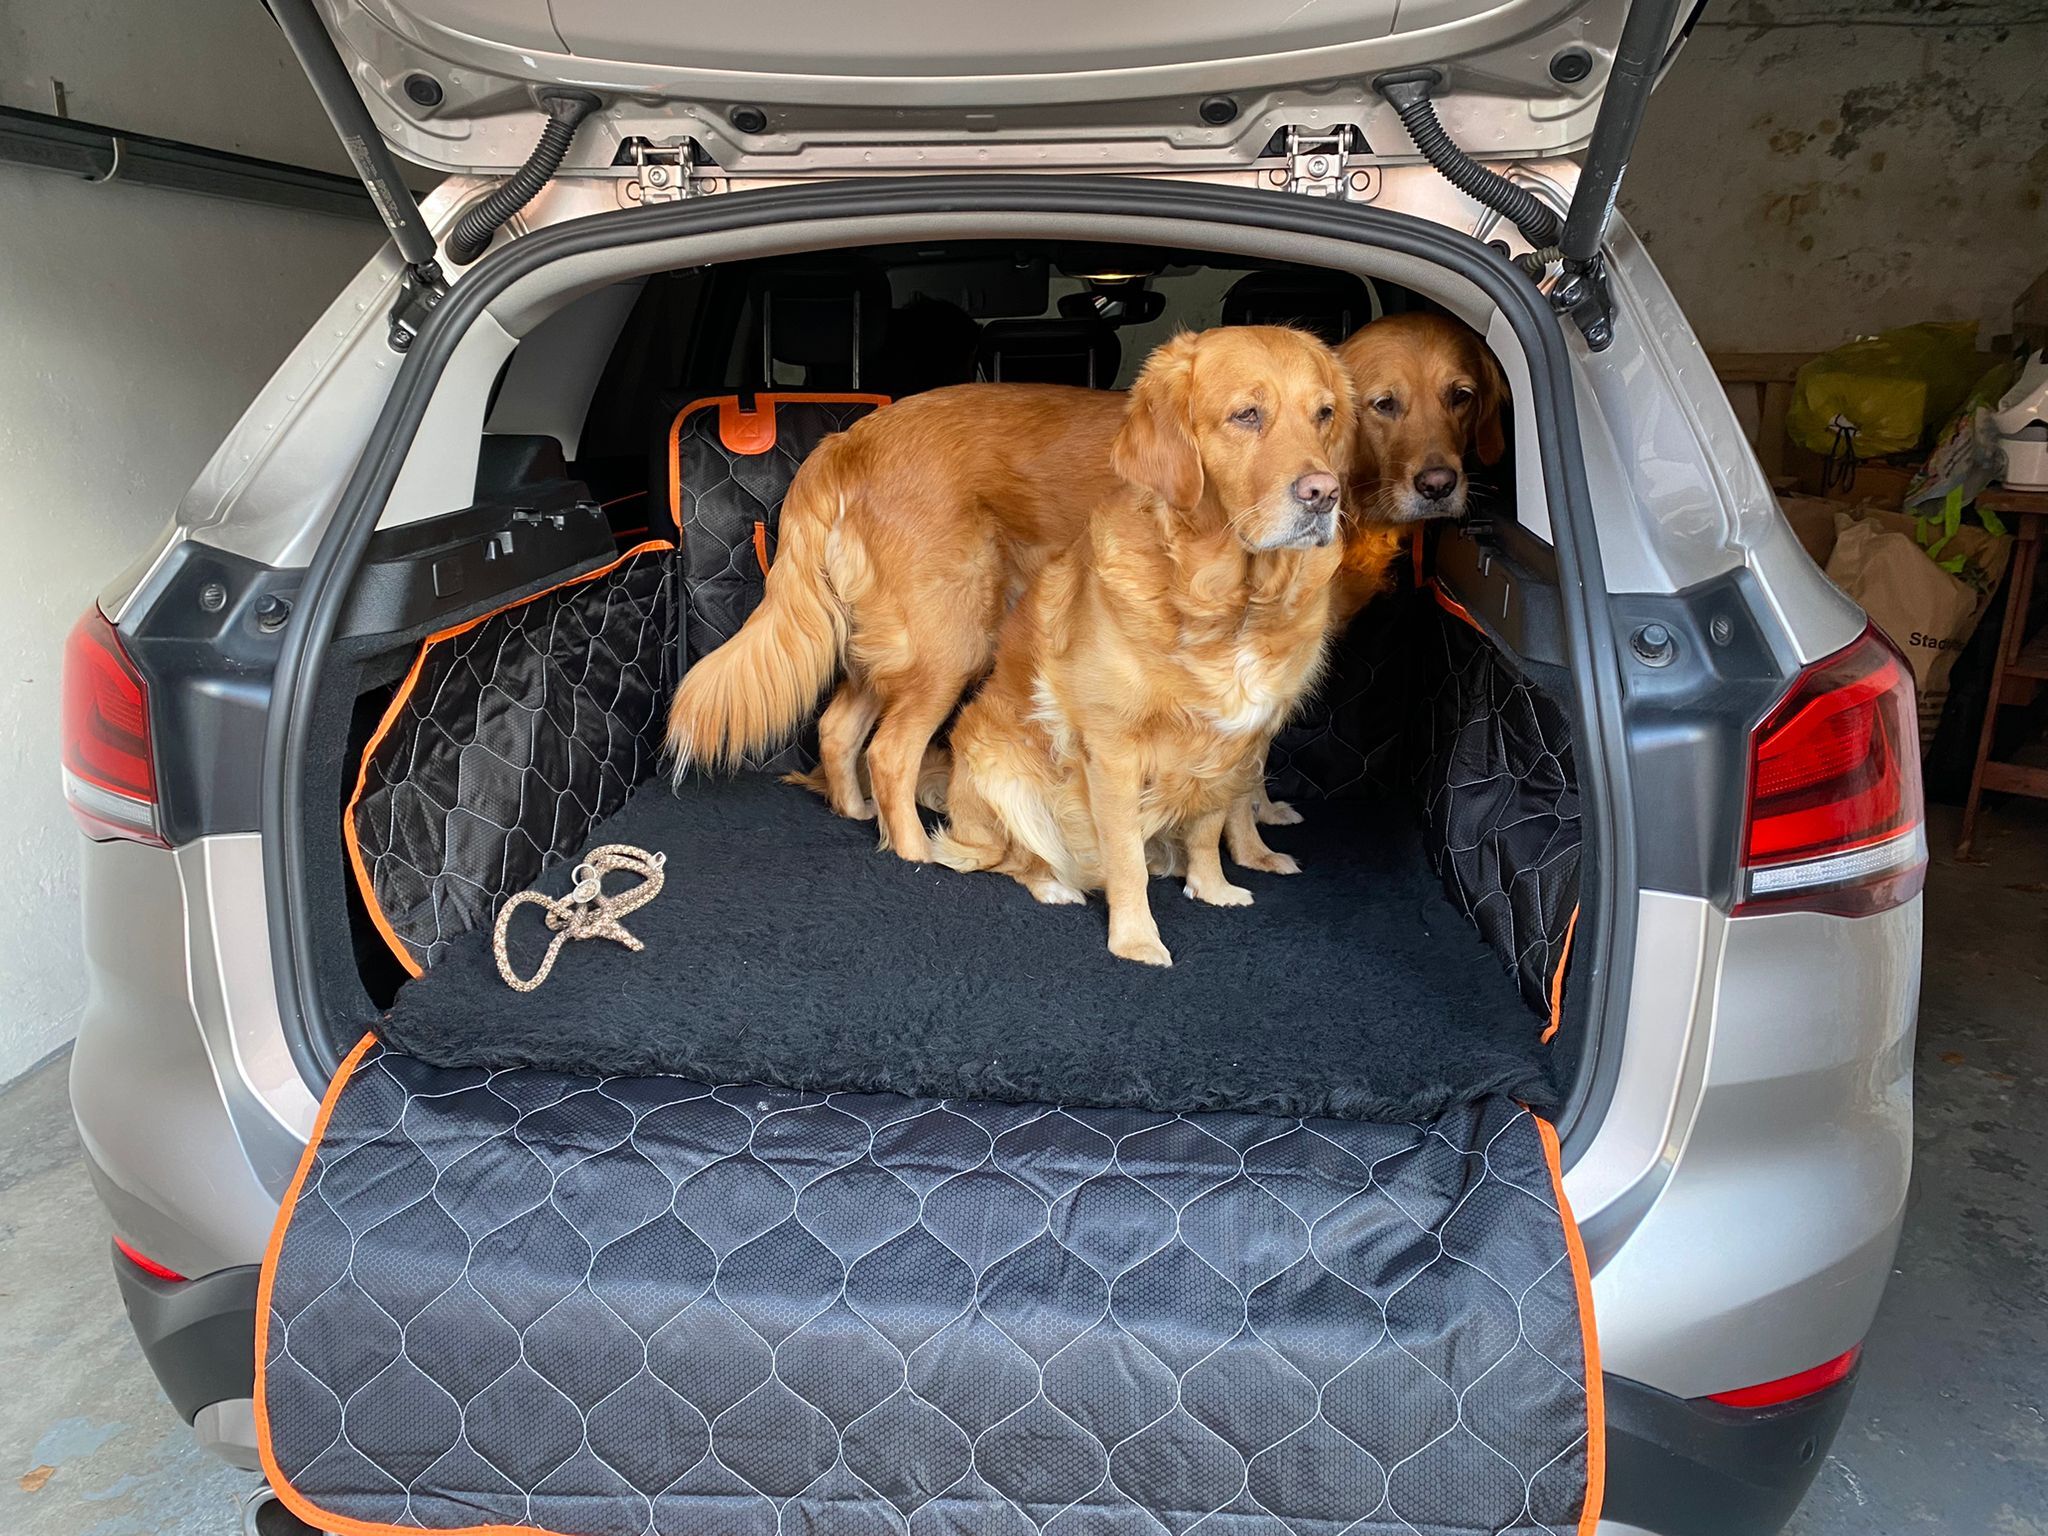 LovPet® 2in1 Hundedecke für Auto Rückbank & Kofferraum mit Seitenschutz und  Sichtfenster Kofferraumschutz - Wasserabweisende Hunde